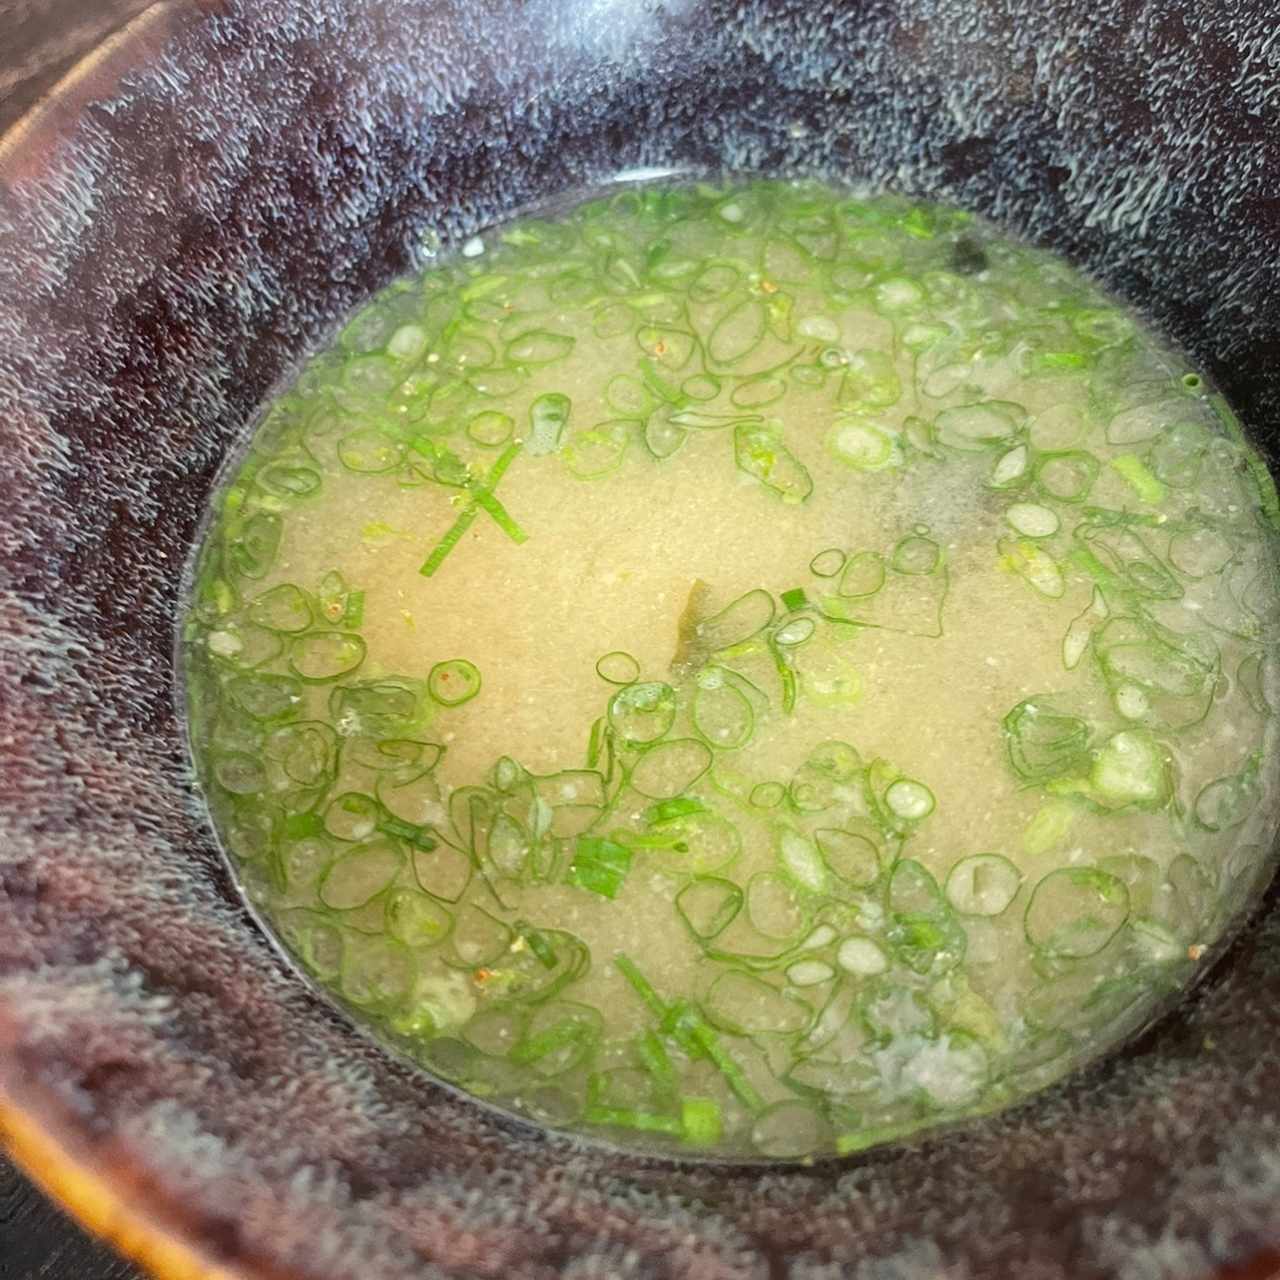 1 - Miso Soup